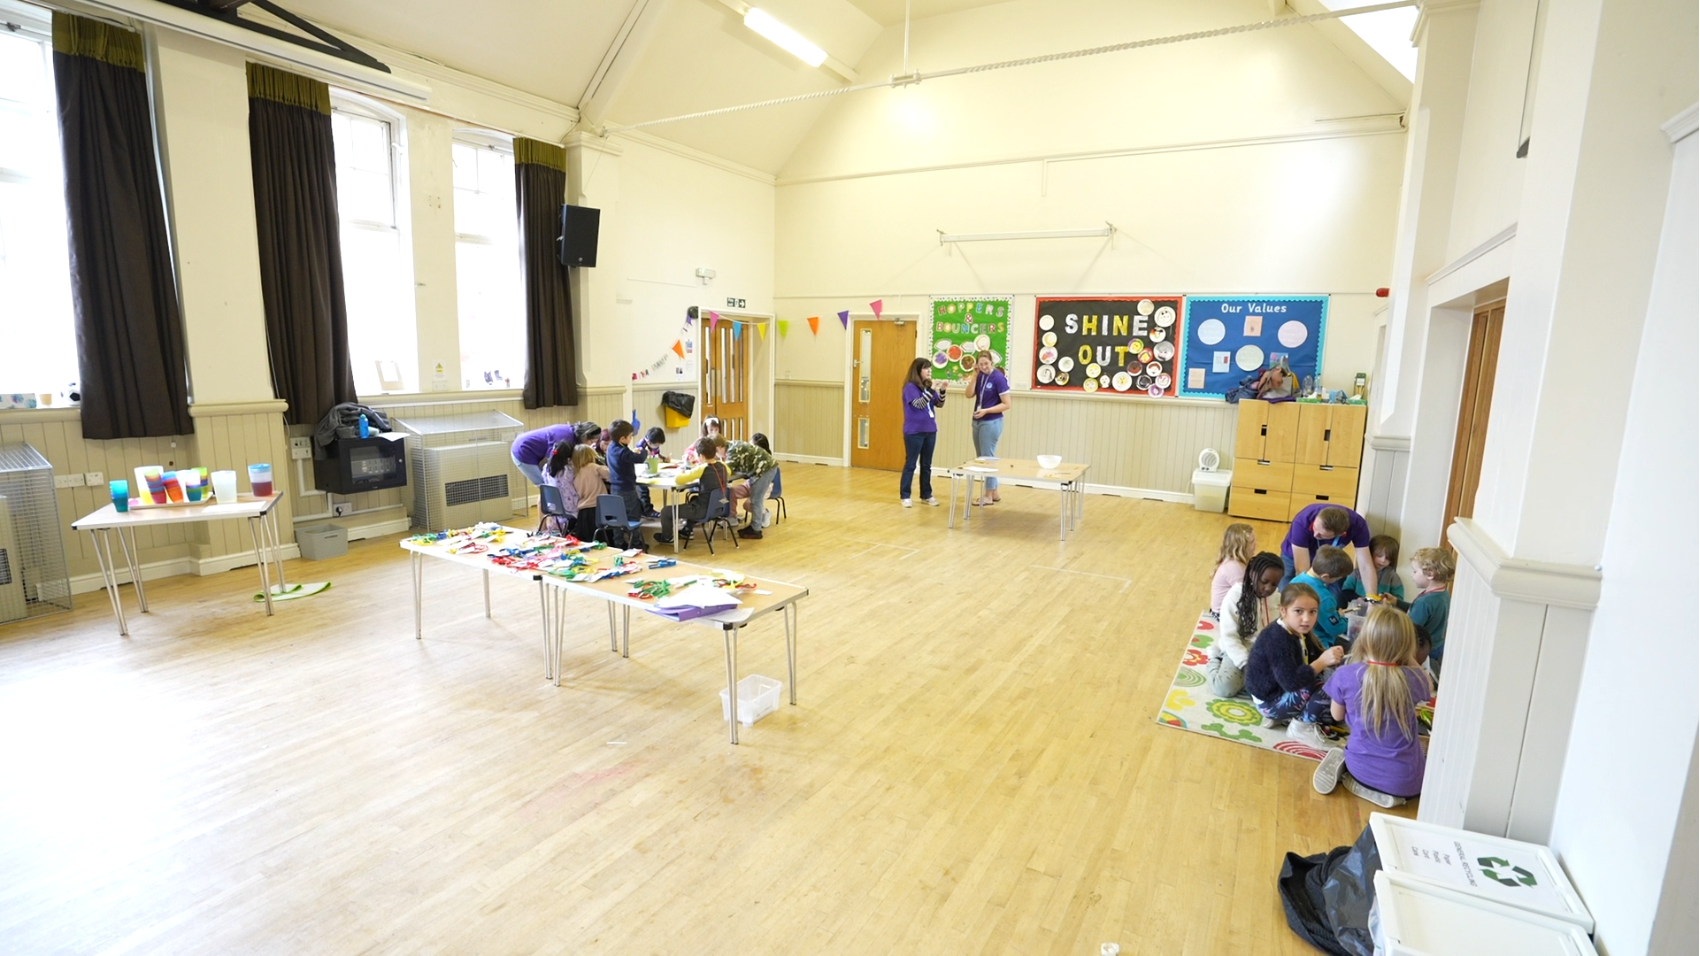 Children doing activities in a hall